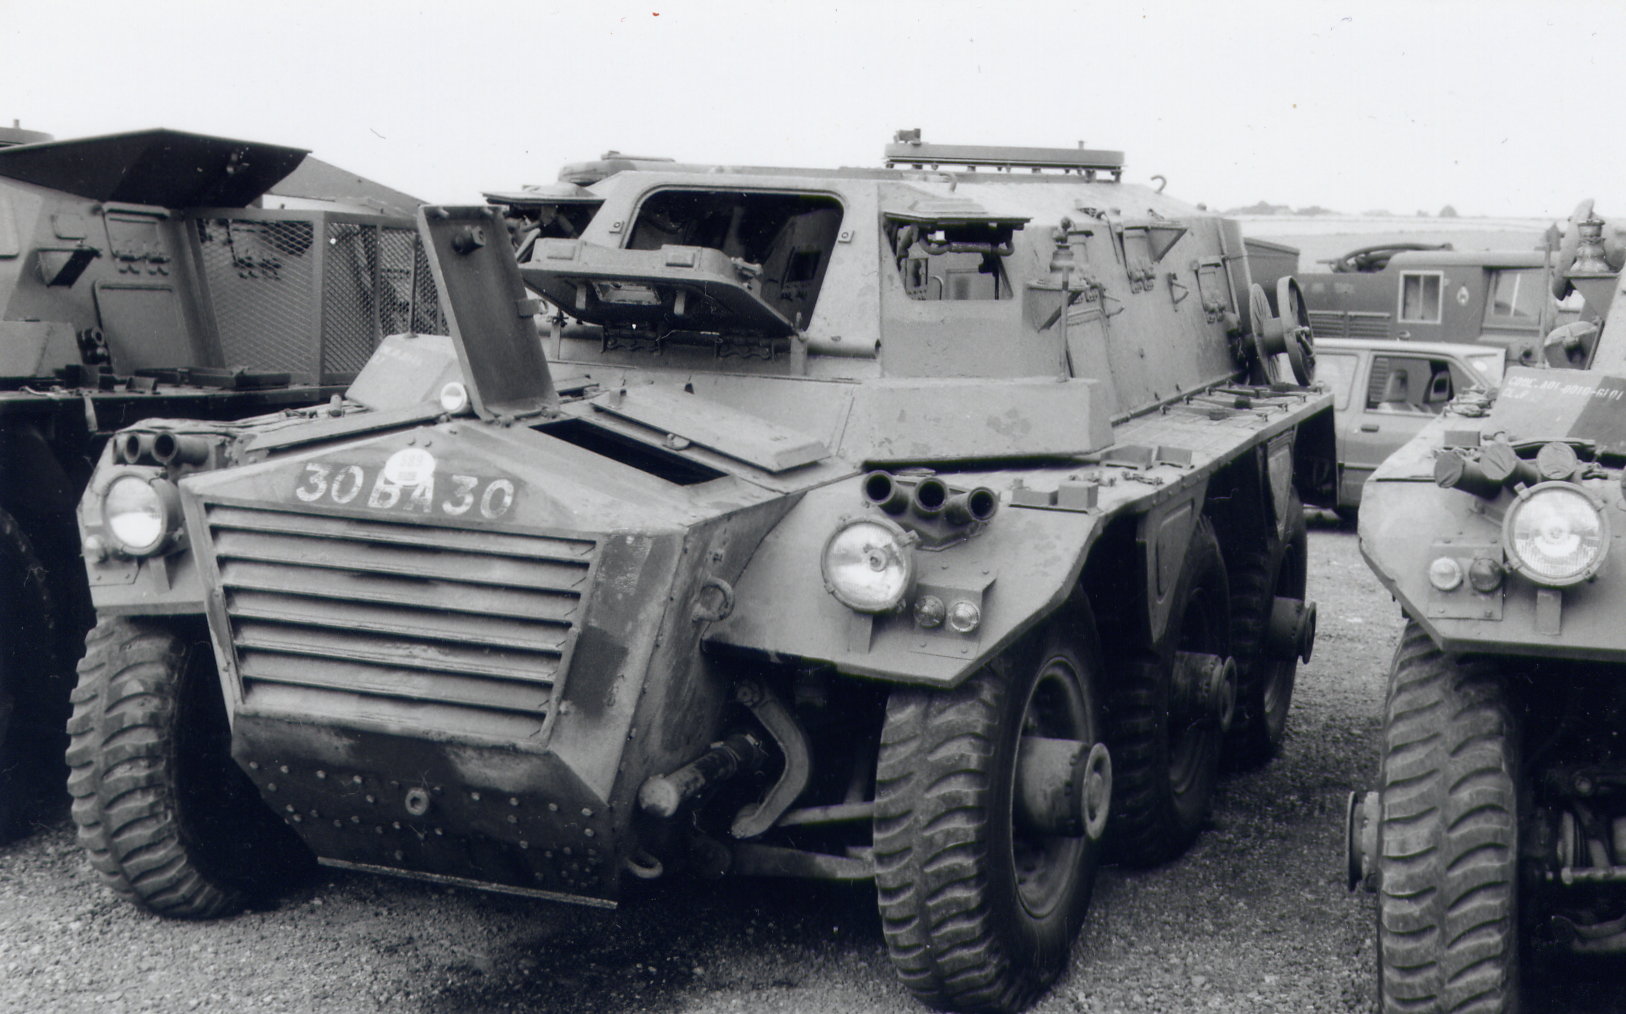 Ба 30. Alvis APC. Бронеавтомобиль Alvis «Scarab». Alvis APC Unimog. Ба-30 бронеавтомобиль.